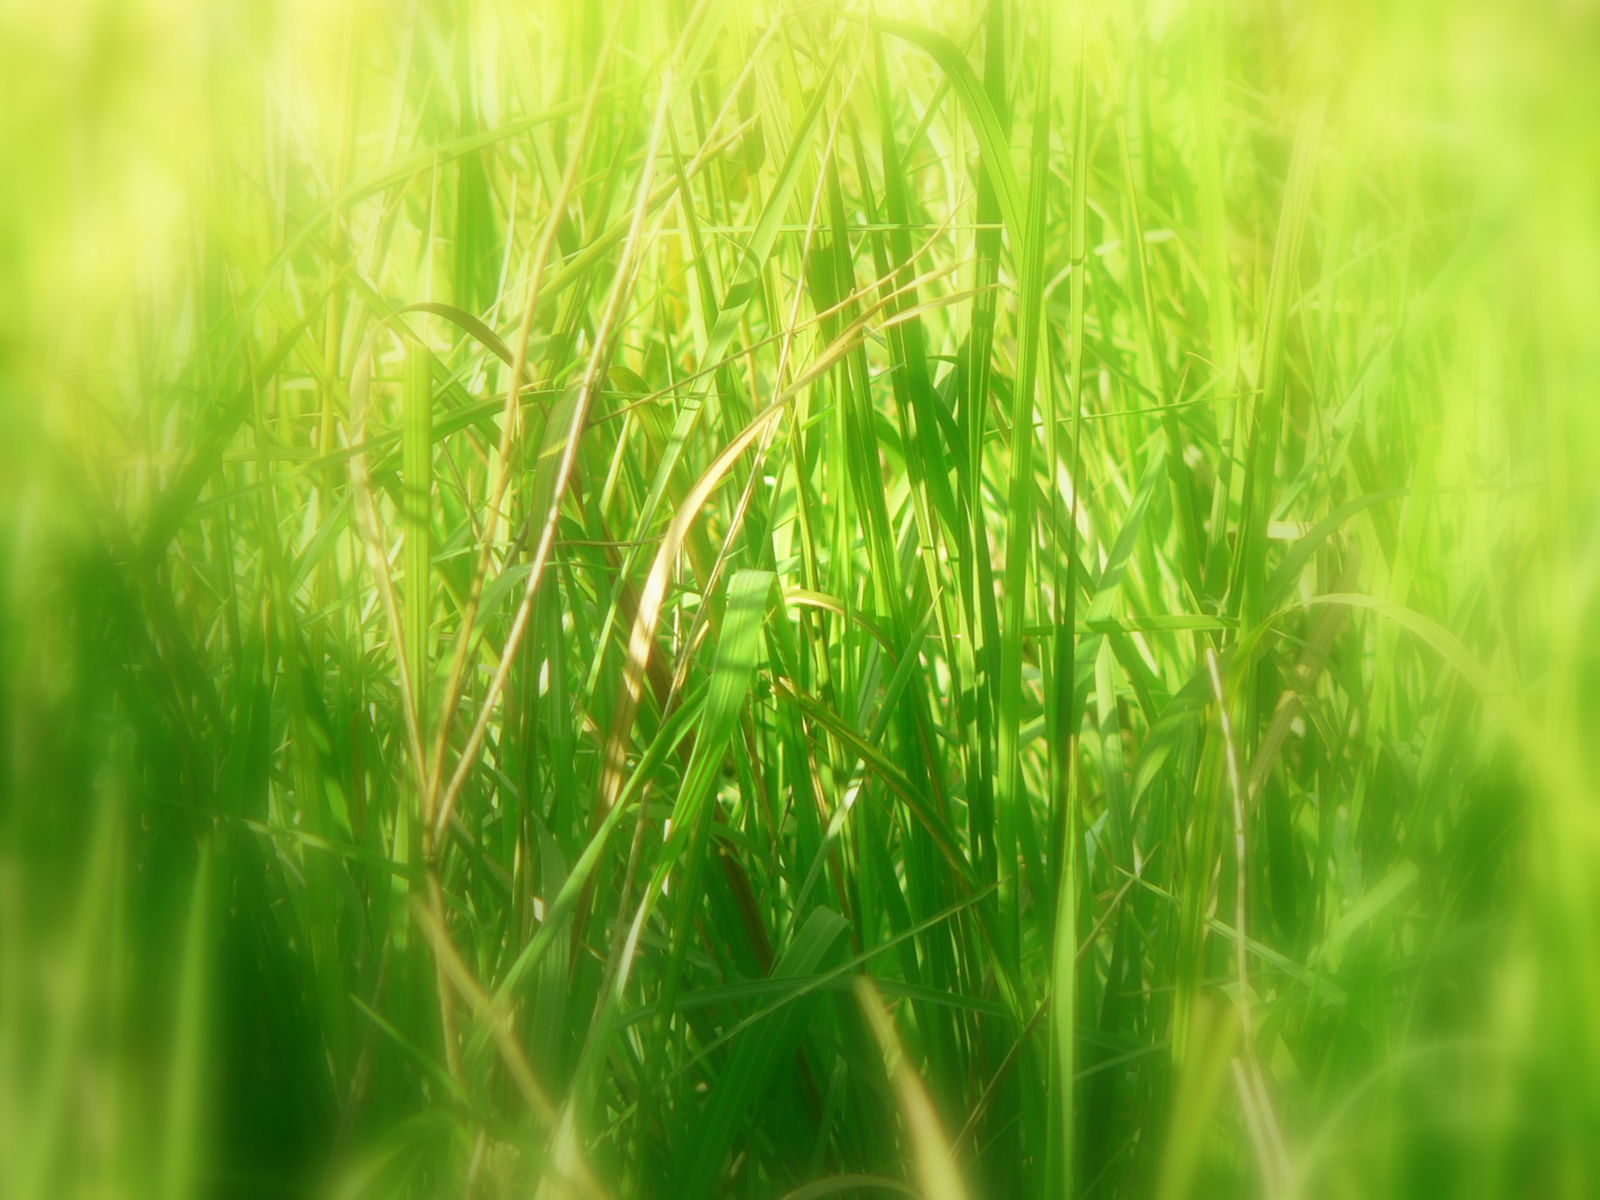 Long grass wallpaper. Long grass